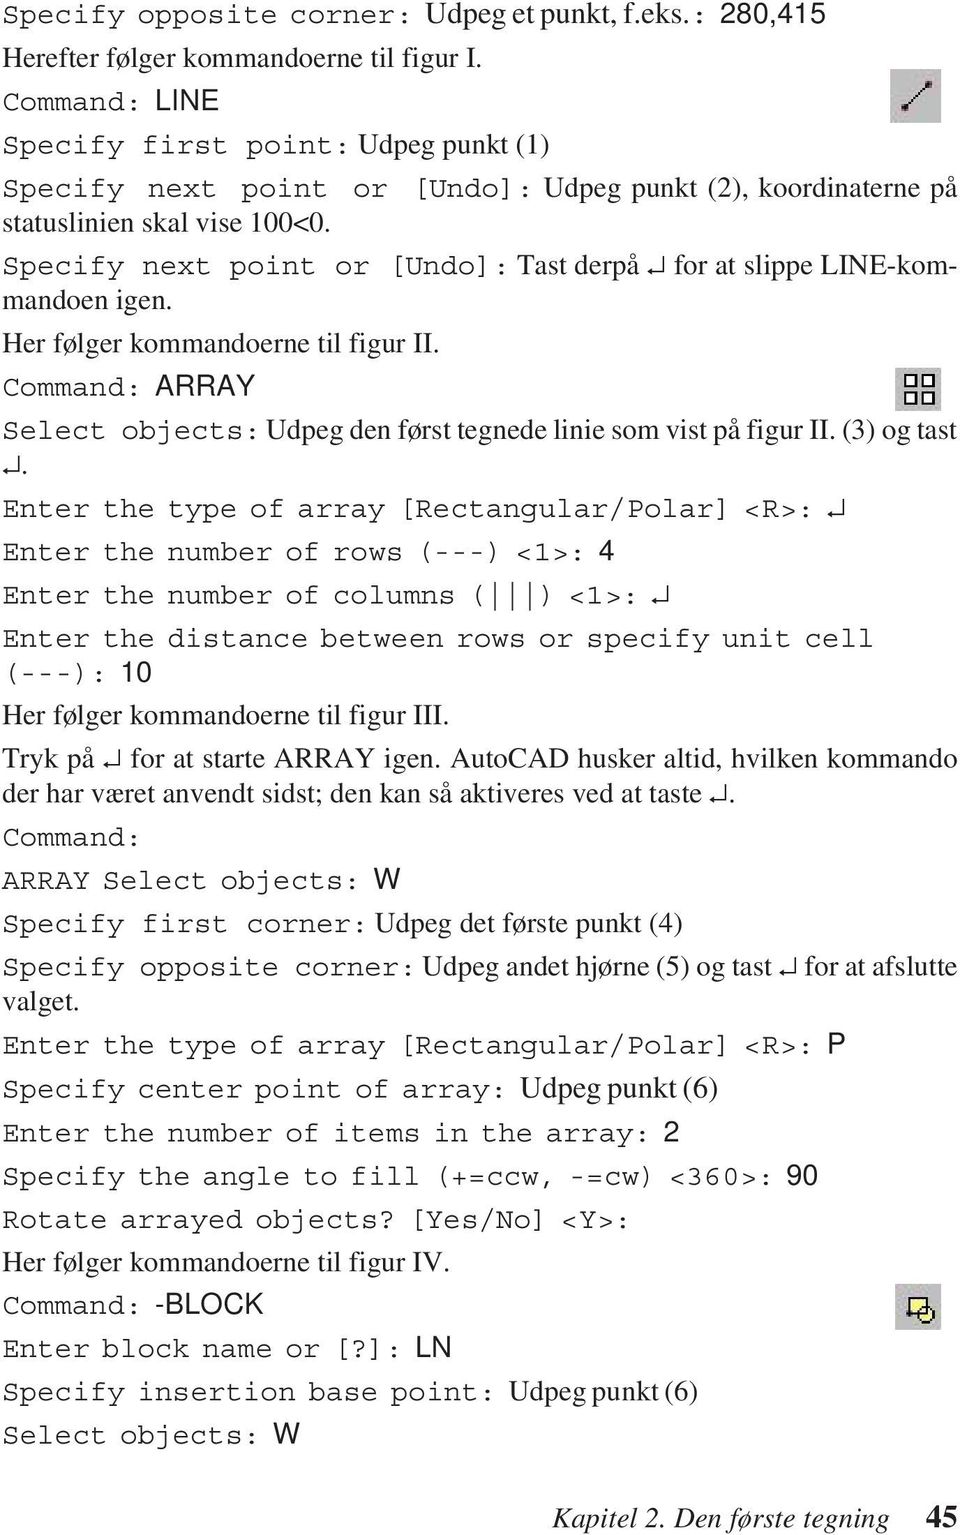 Specify next point or [Undo]: Tast derpå for at slippe LINE-kommandoen igen. Her følger kommandoerne til figur II. Command: ARRAY Select objects: Udpeg den først tegnede linie som vist på figur II.